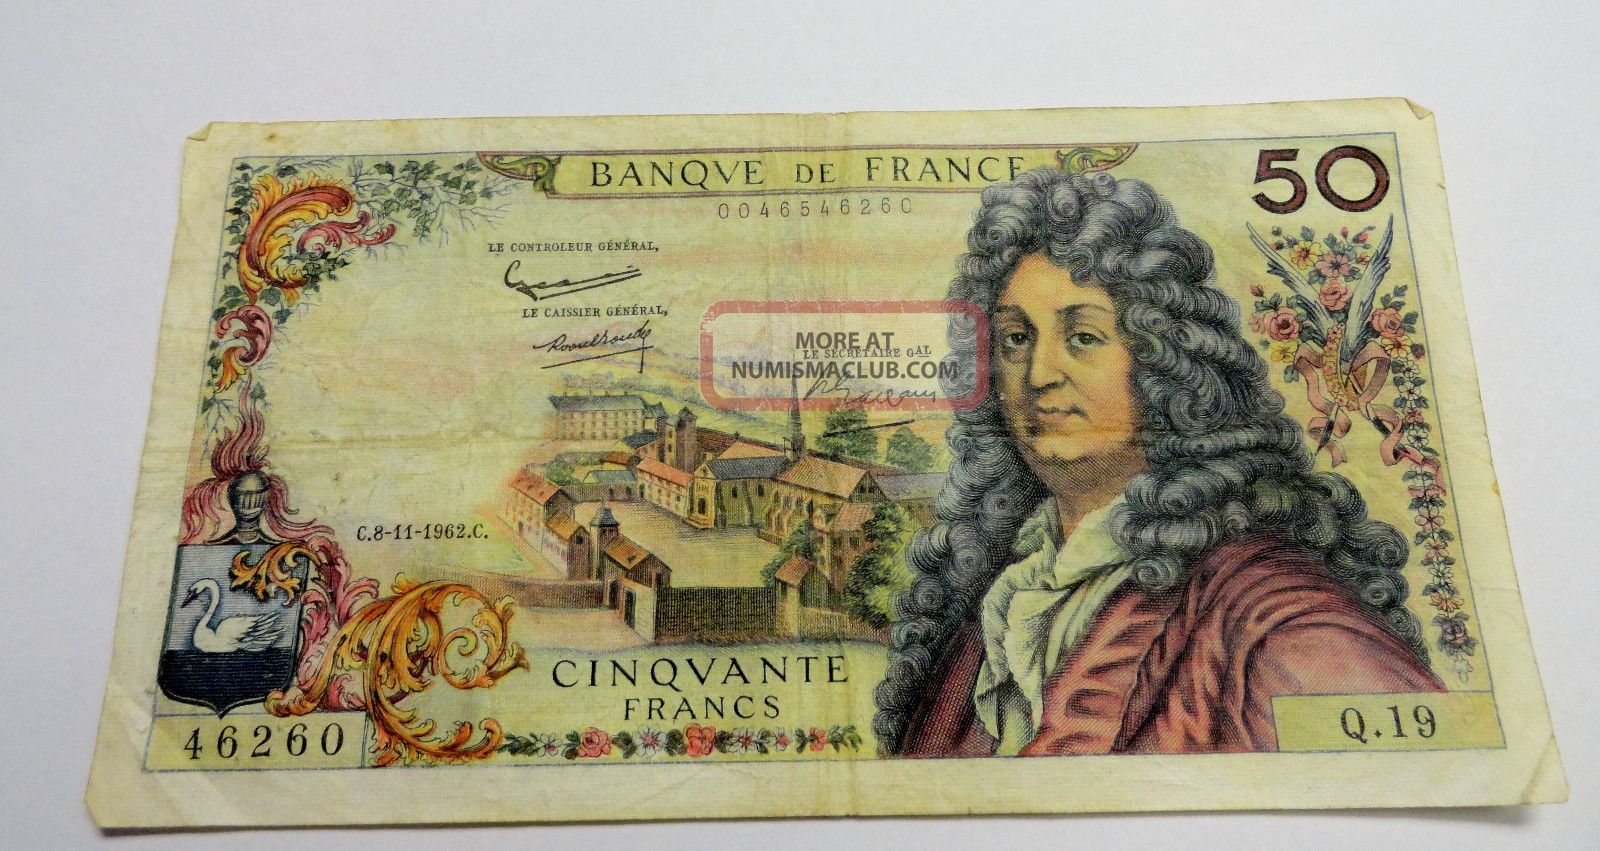 C. 8 - 11 - 1962. C. Banque De France Cinquante 50 Francs Banknote